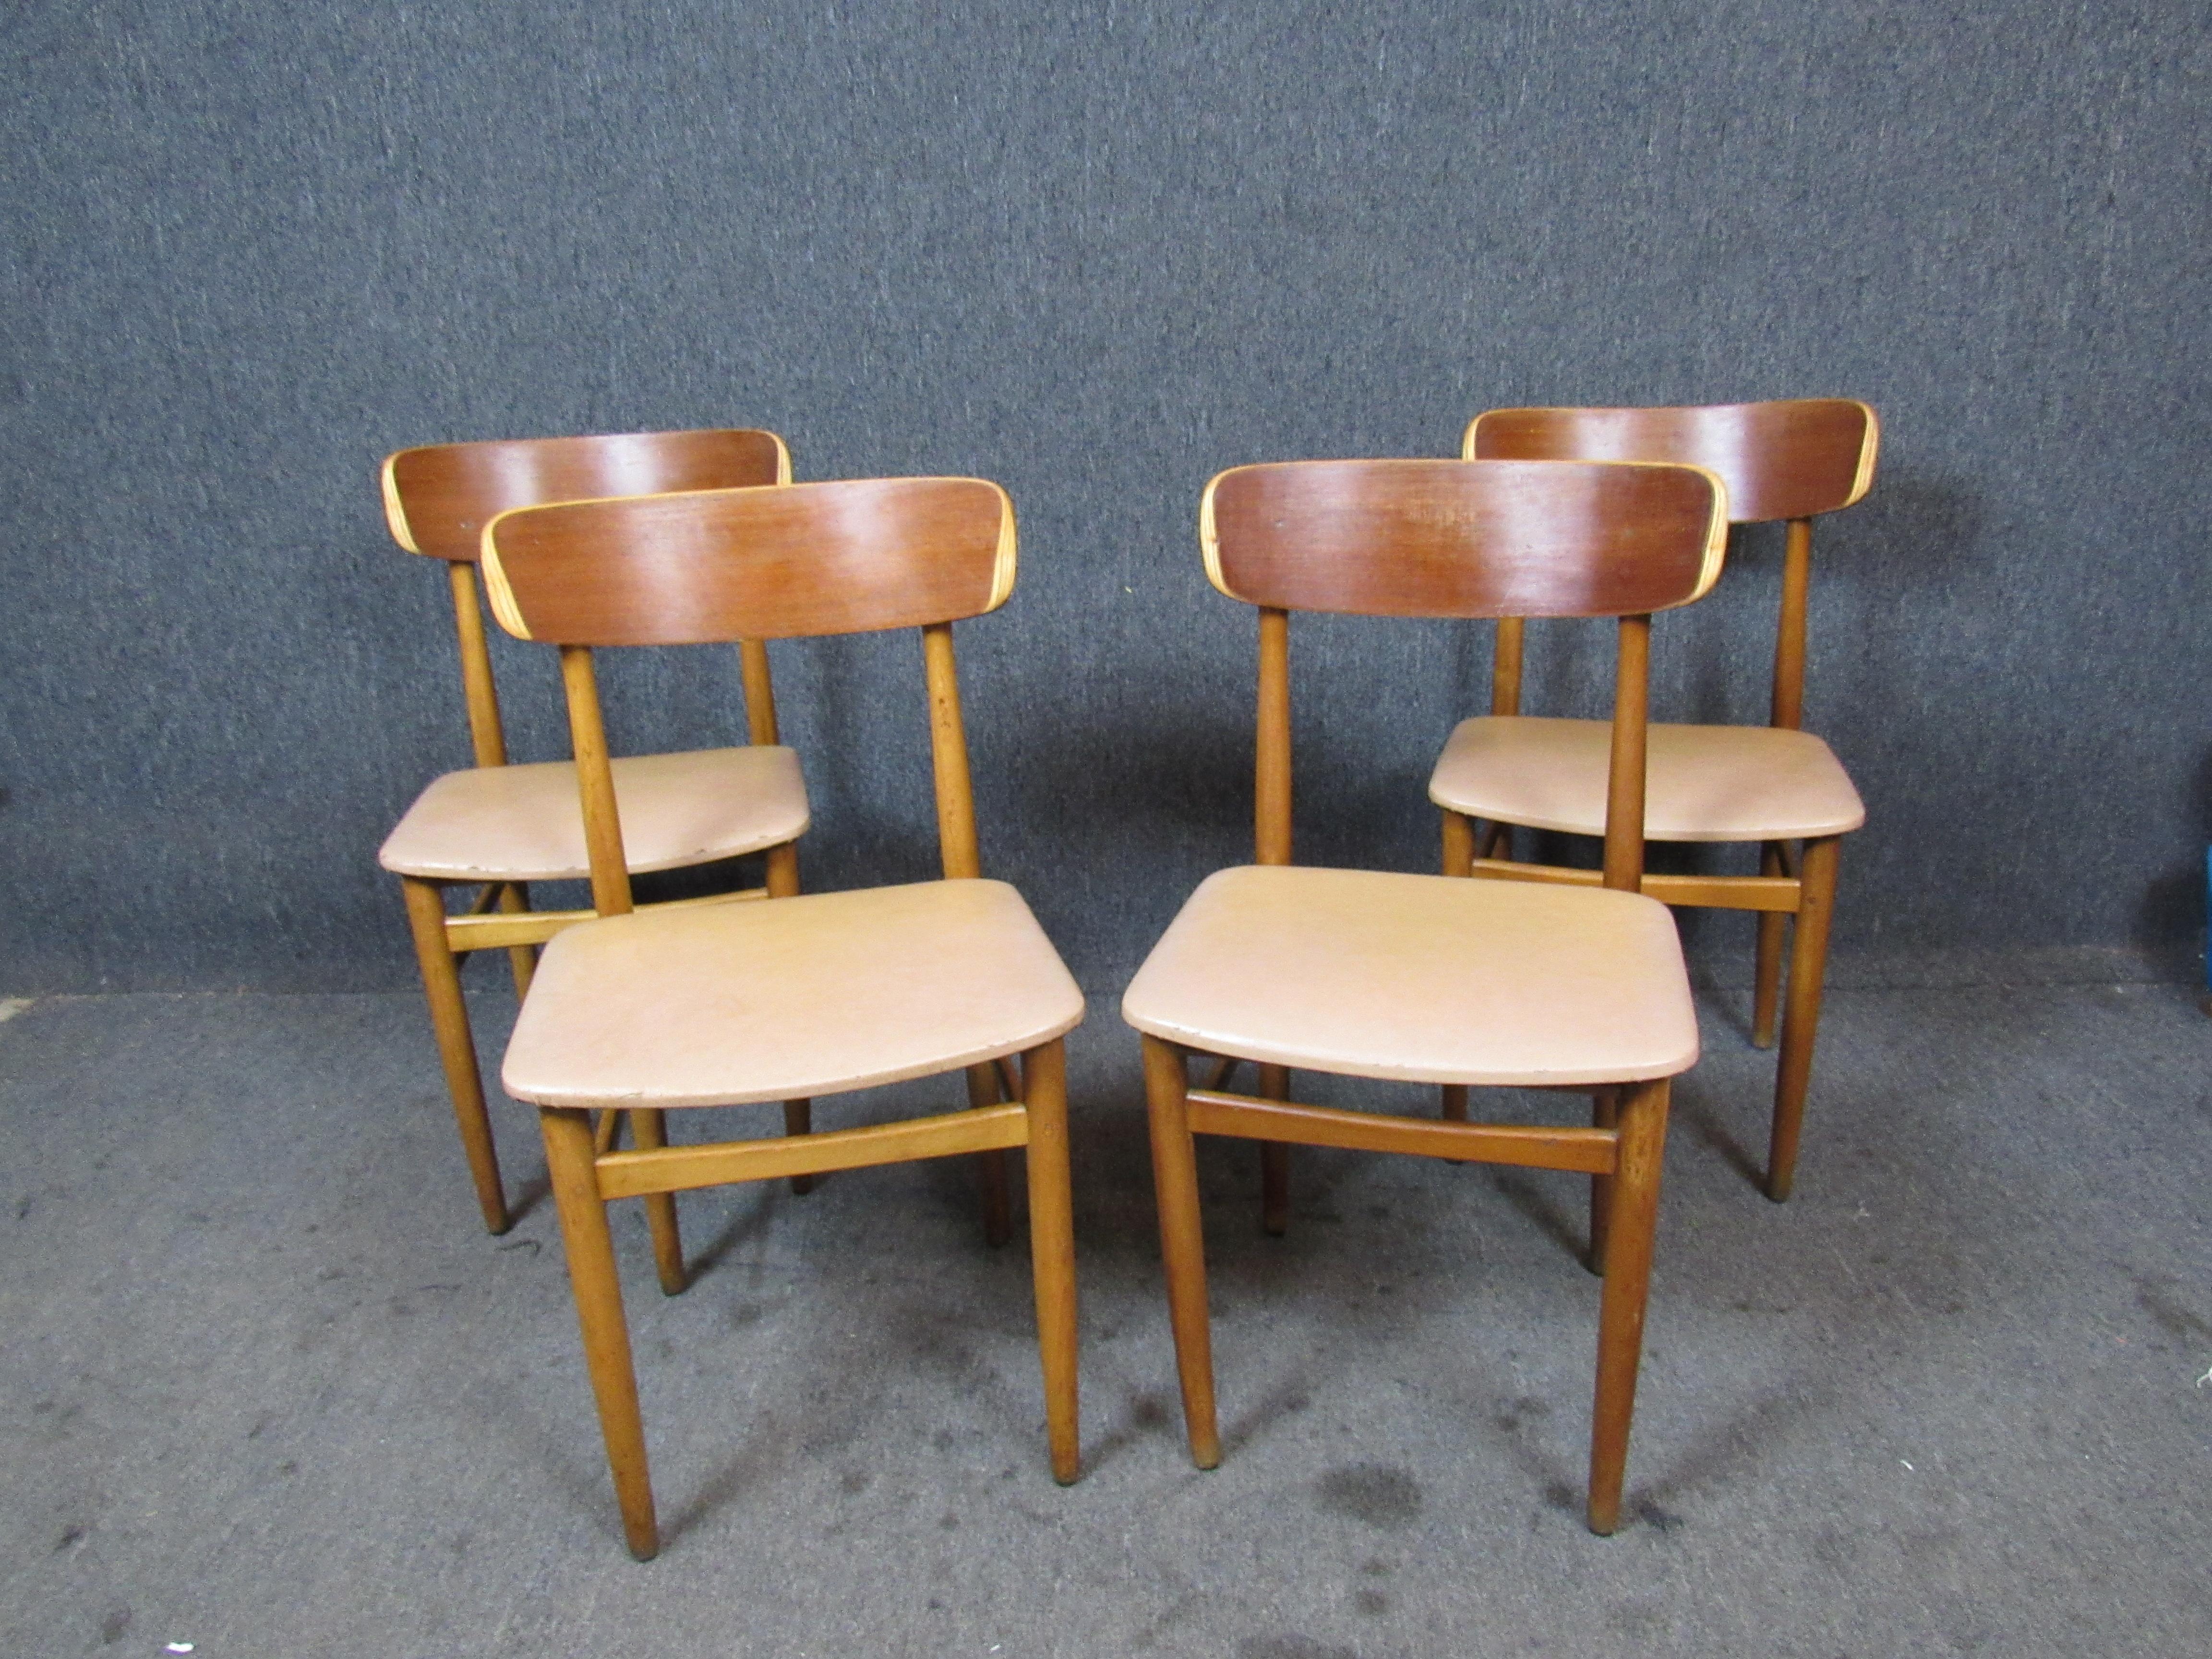 Fantastisches Set kompakter dänischer Esszimmerstühle im Vintage-Stil mit einzigartigen gebogenen Sperrholzlehnen für die klassische Ästhetik der Jahrhundertmitte. Leichte Esszimmerstühle sind ideal für Wohnungen oder andere kleine Räume, in denen